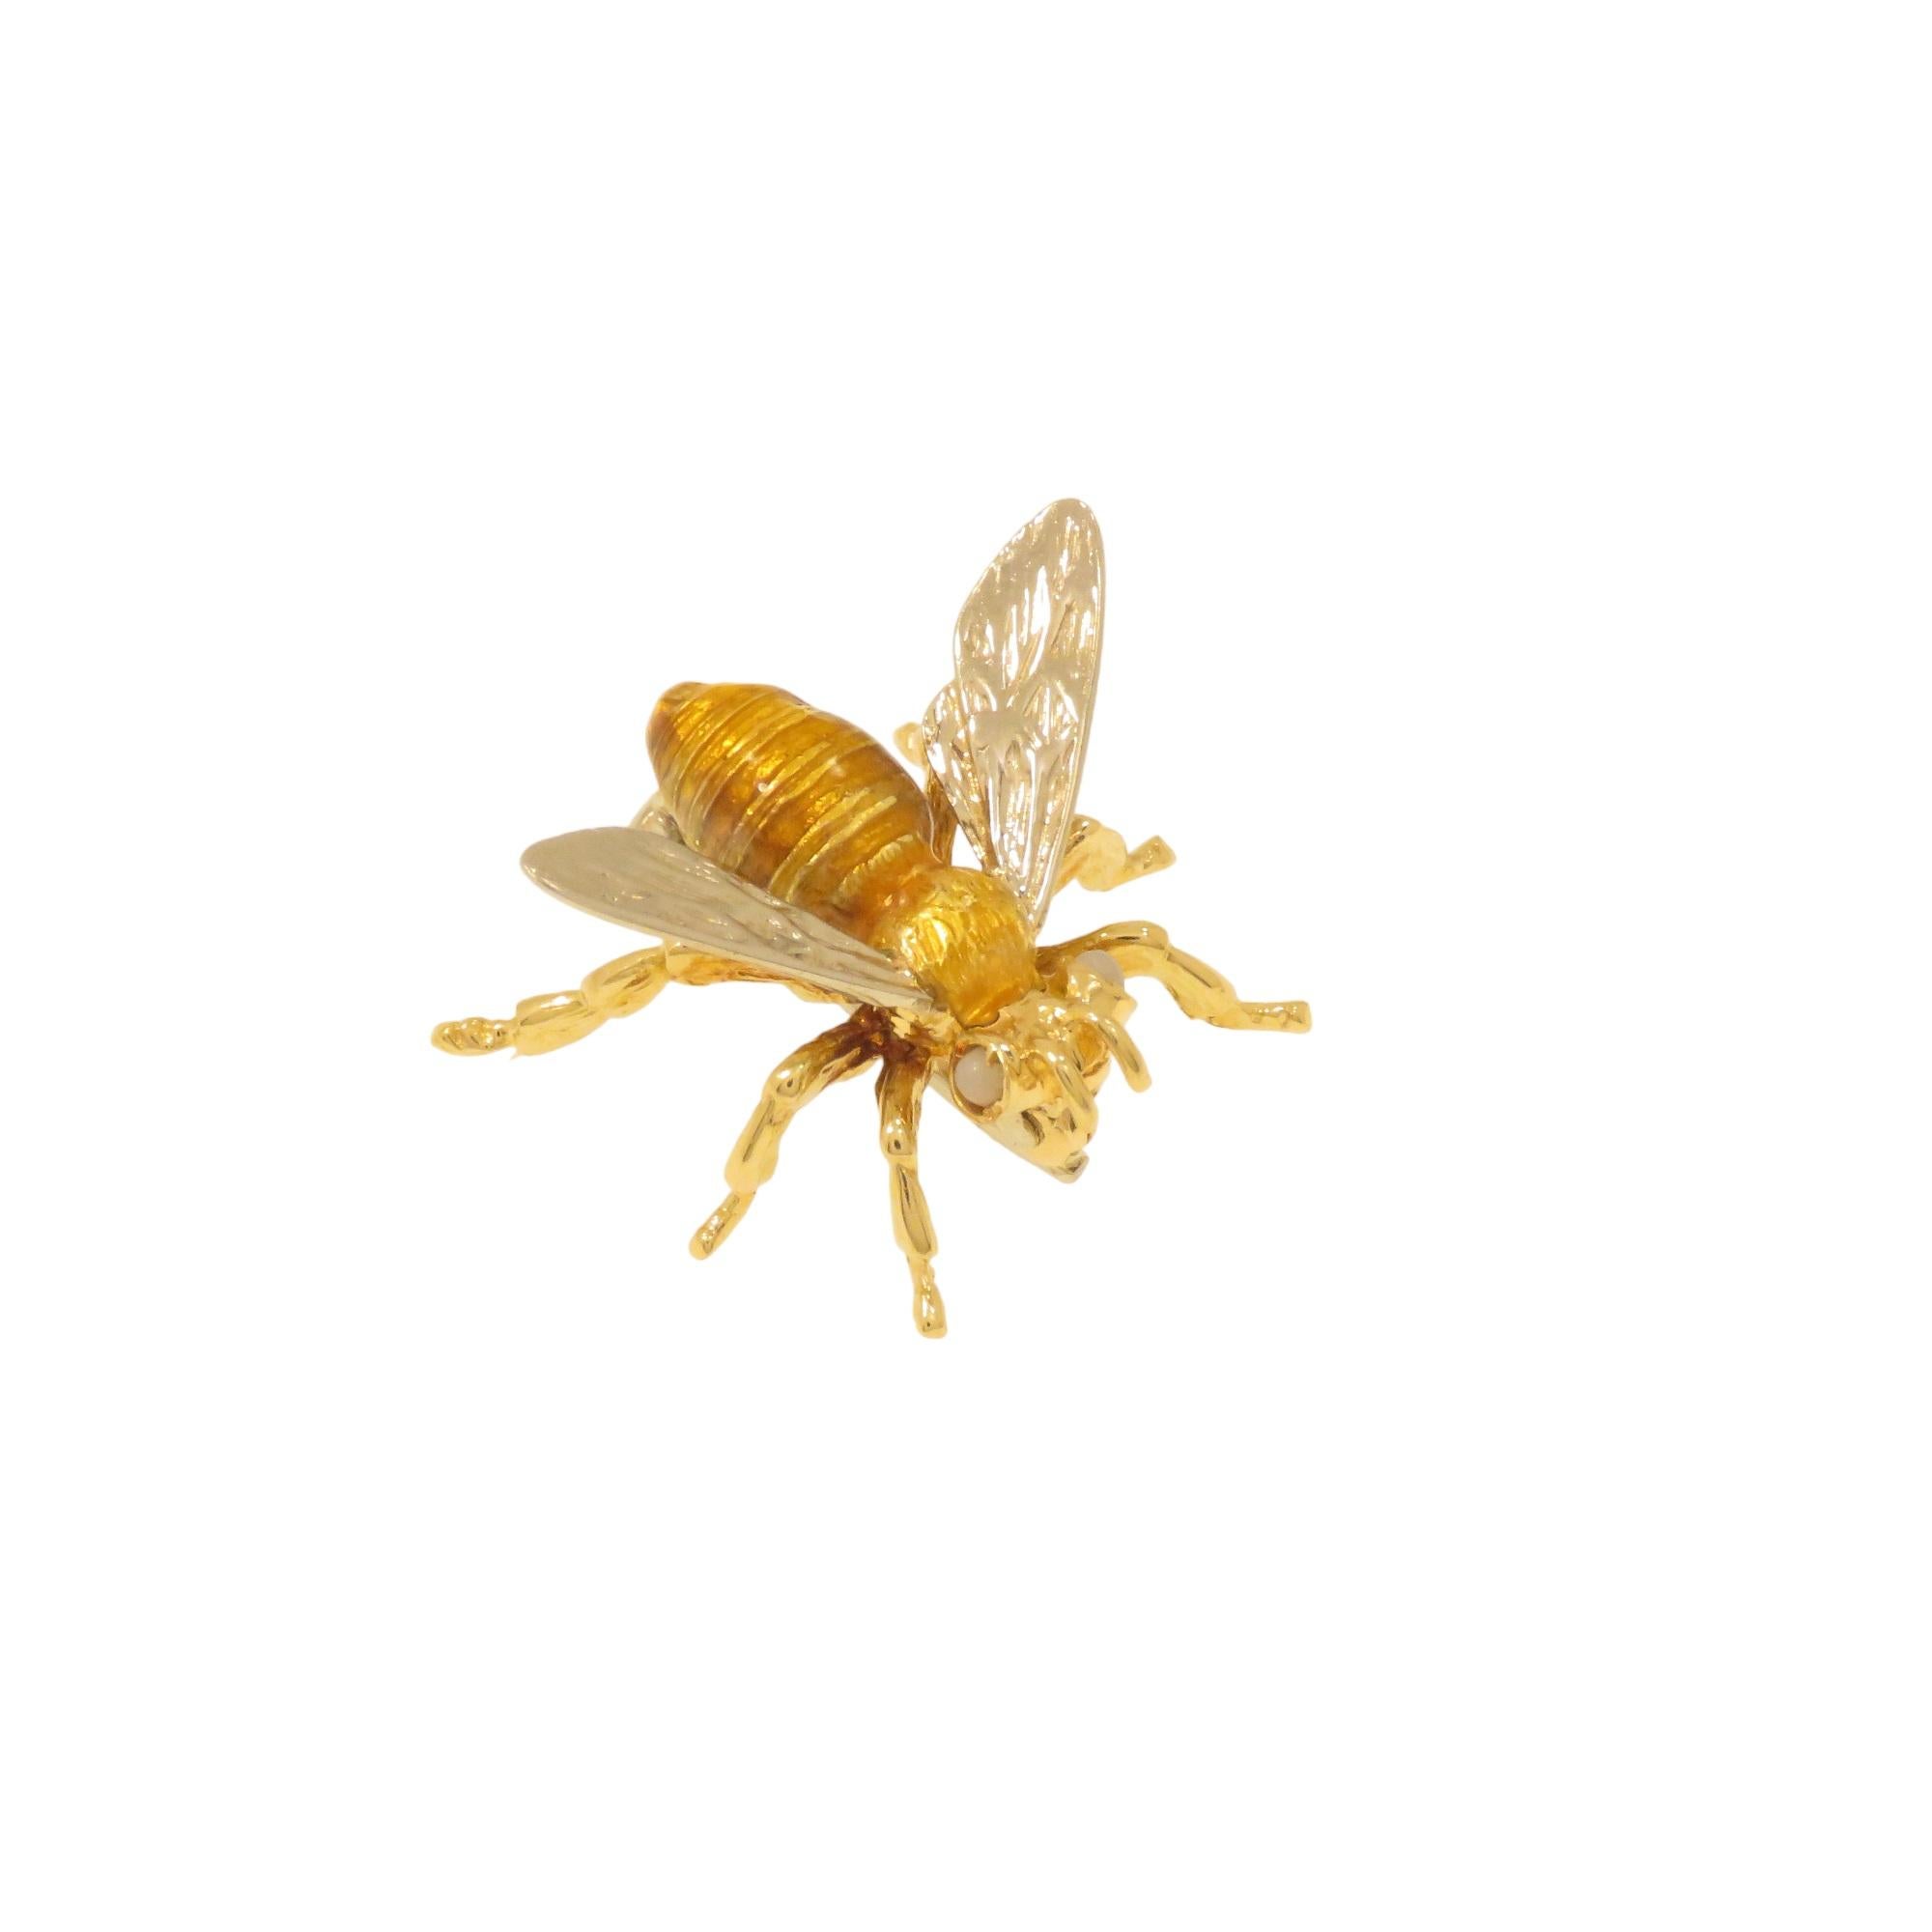 Questa spilla rappresenta un'ape ed è realizzata a mano curando i mini particolari. Prodotta in Italia tra il 1960 e 1970. Il corpo è in oro giallo 18 carati con smaltatura a fuoco e le ali in oro bianco sempre 18 carati. Negli occhi sono